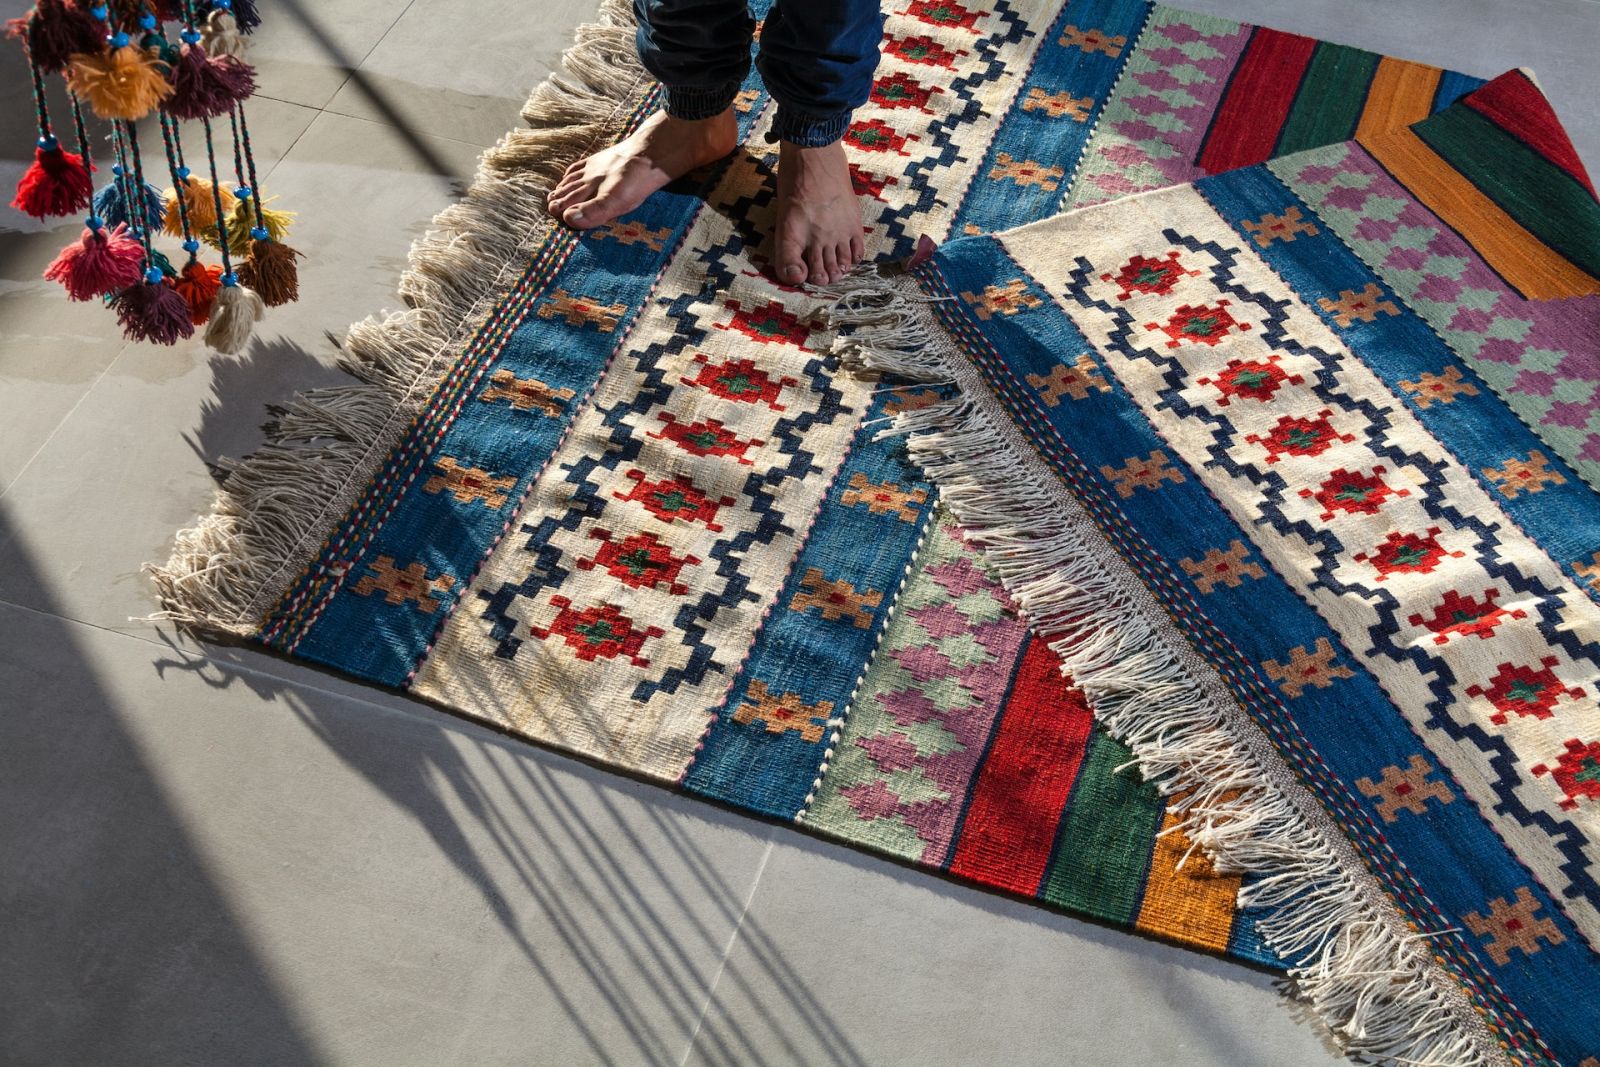 不同地毯材質具有不同的特色及優缺點，可以按照需求、季節挑選適合的地毯材質